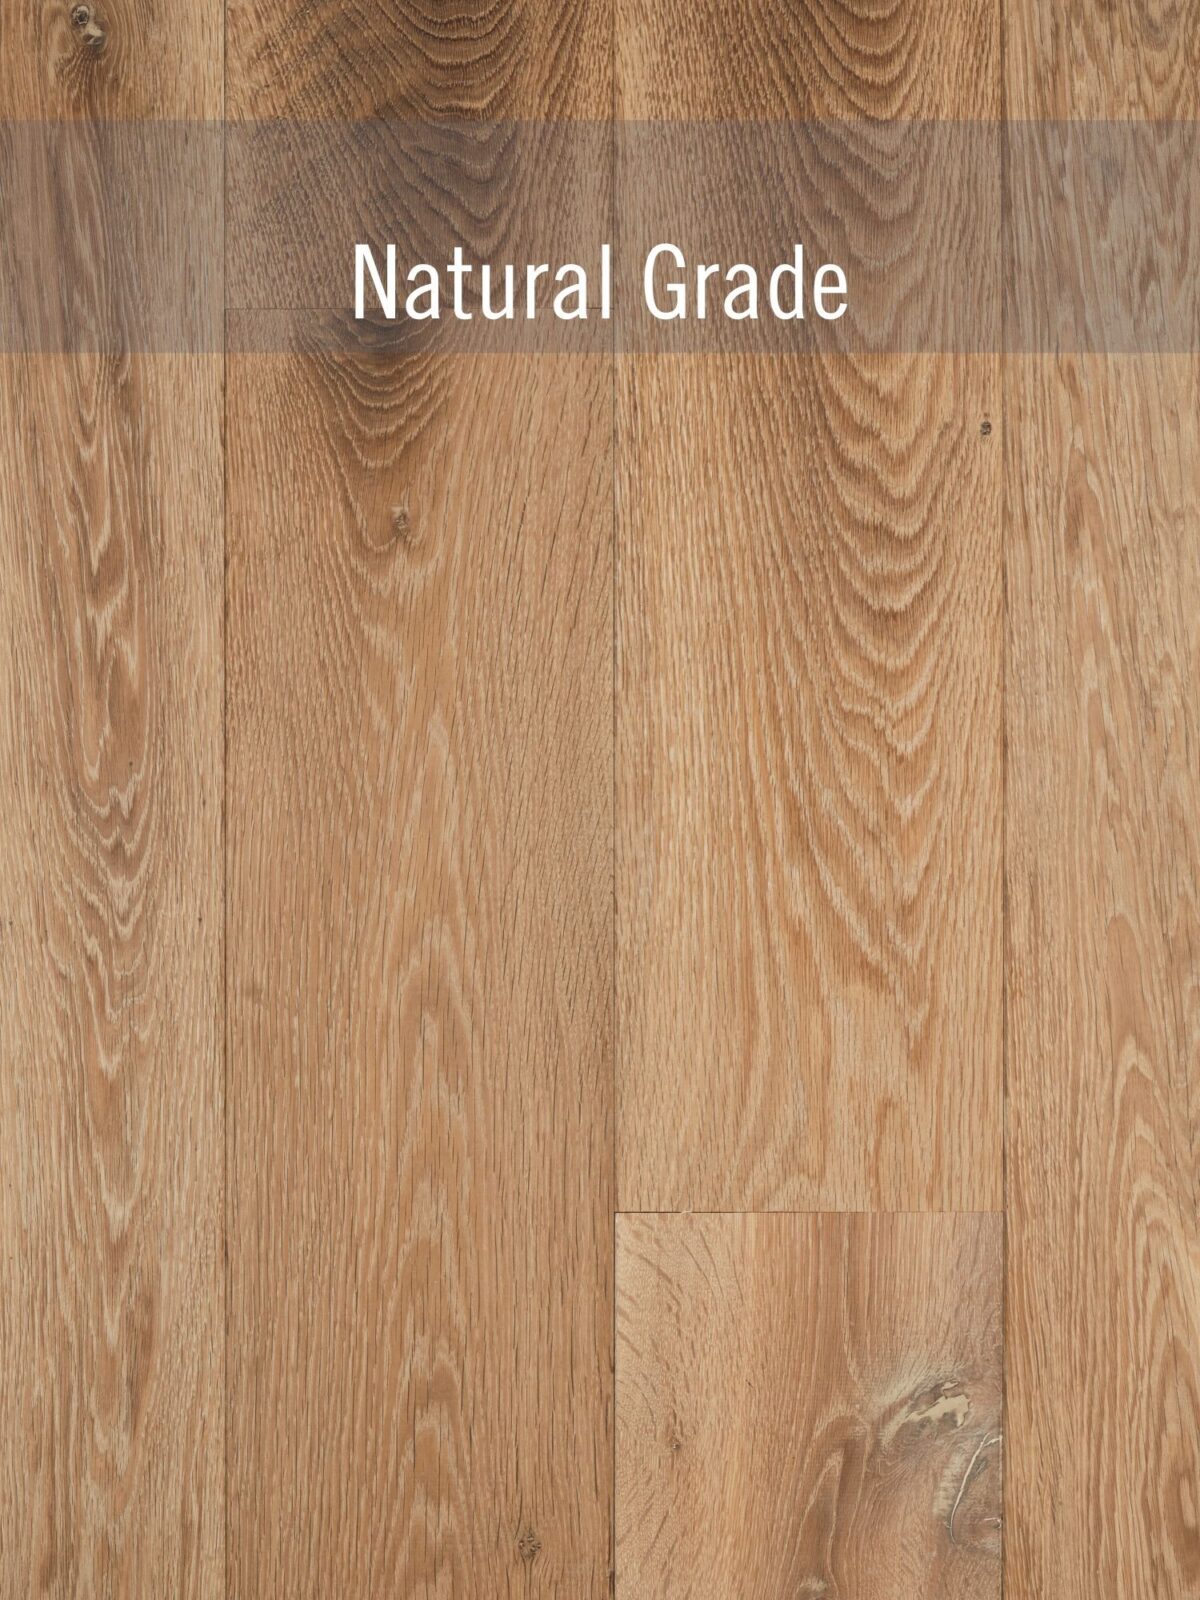 natural grade flooring